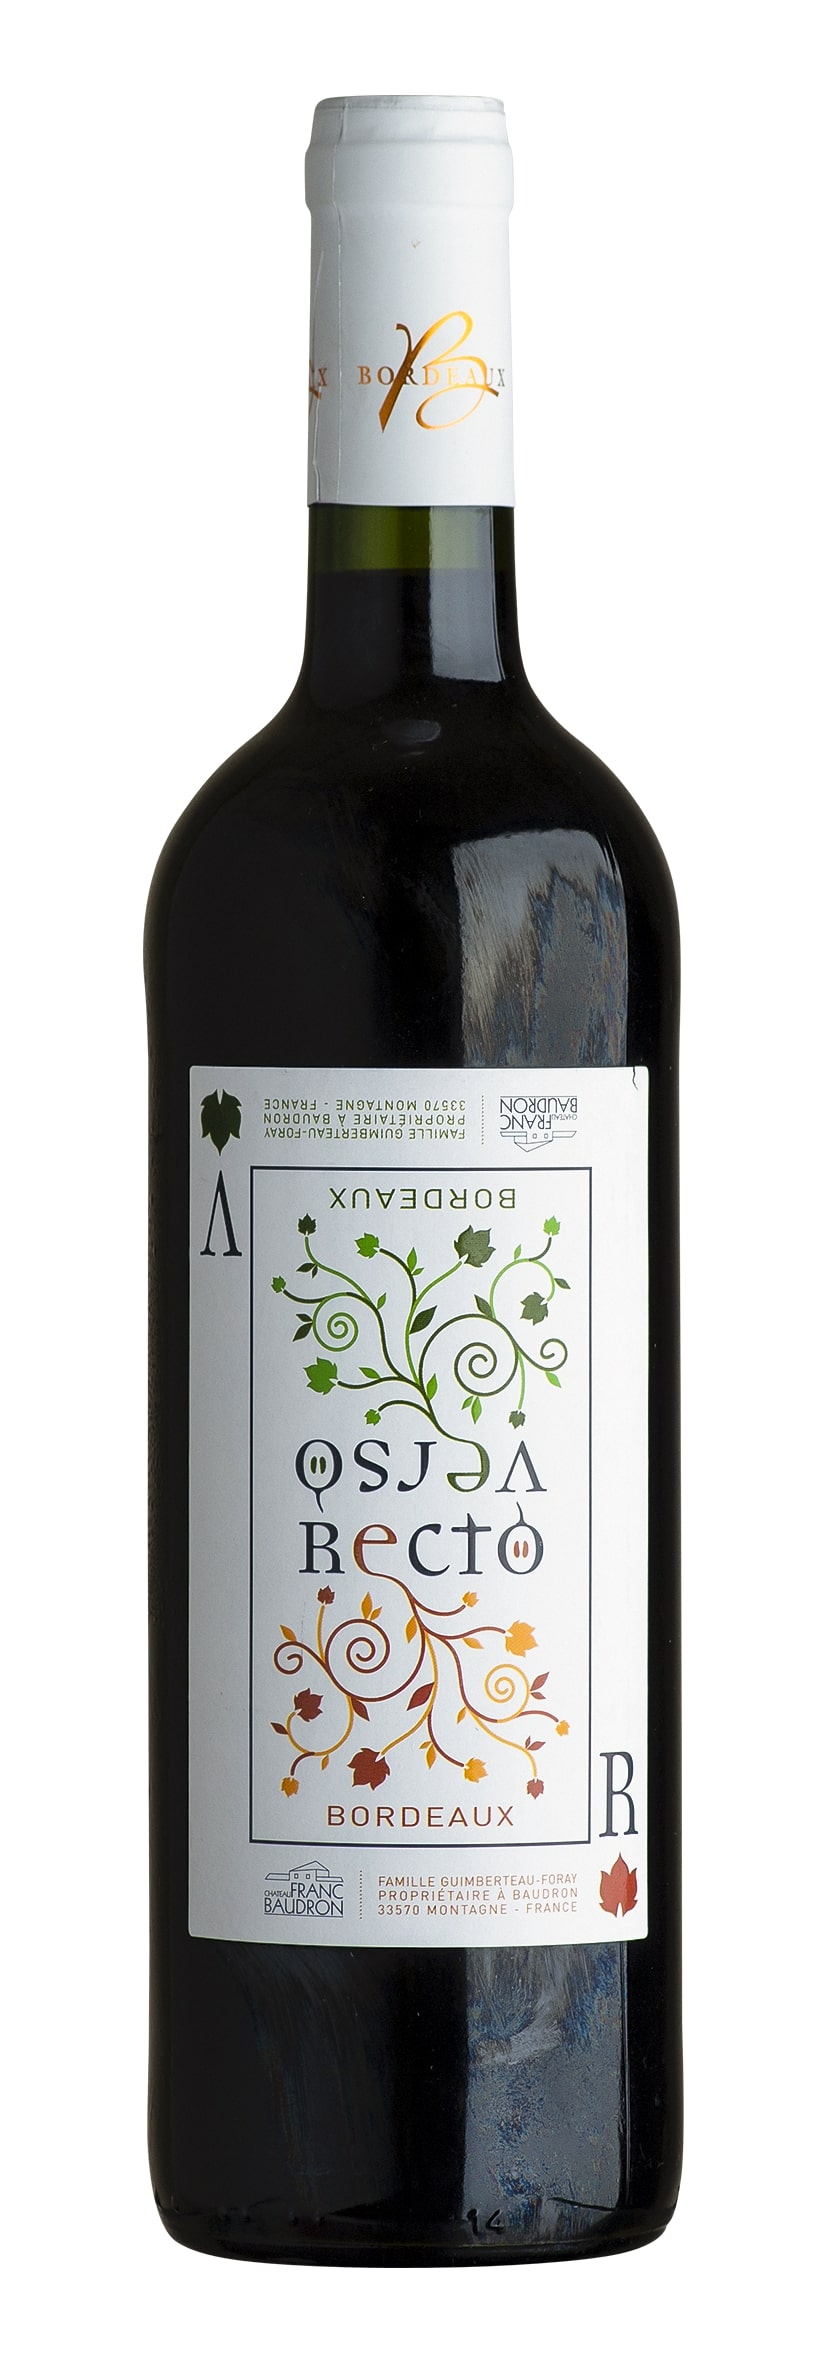 Bordeaux rouge AOC Recto-Verso 2019